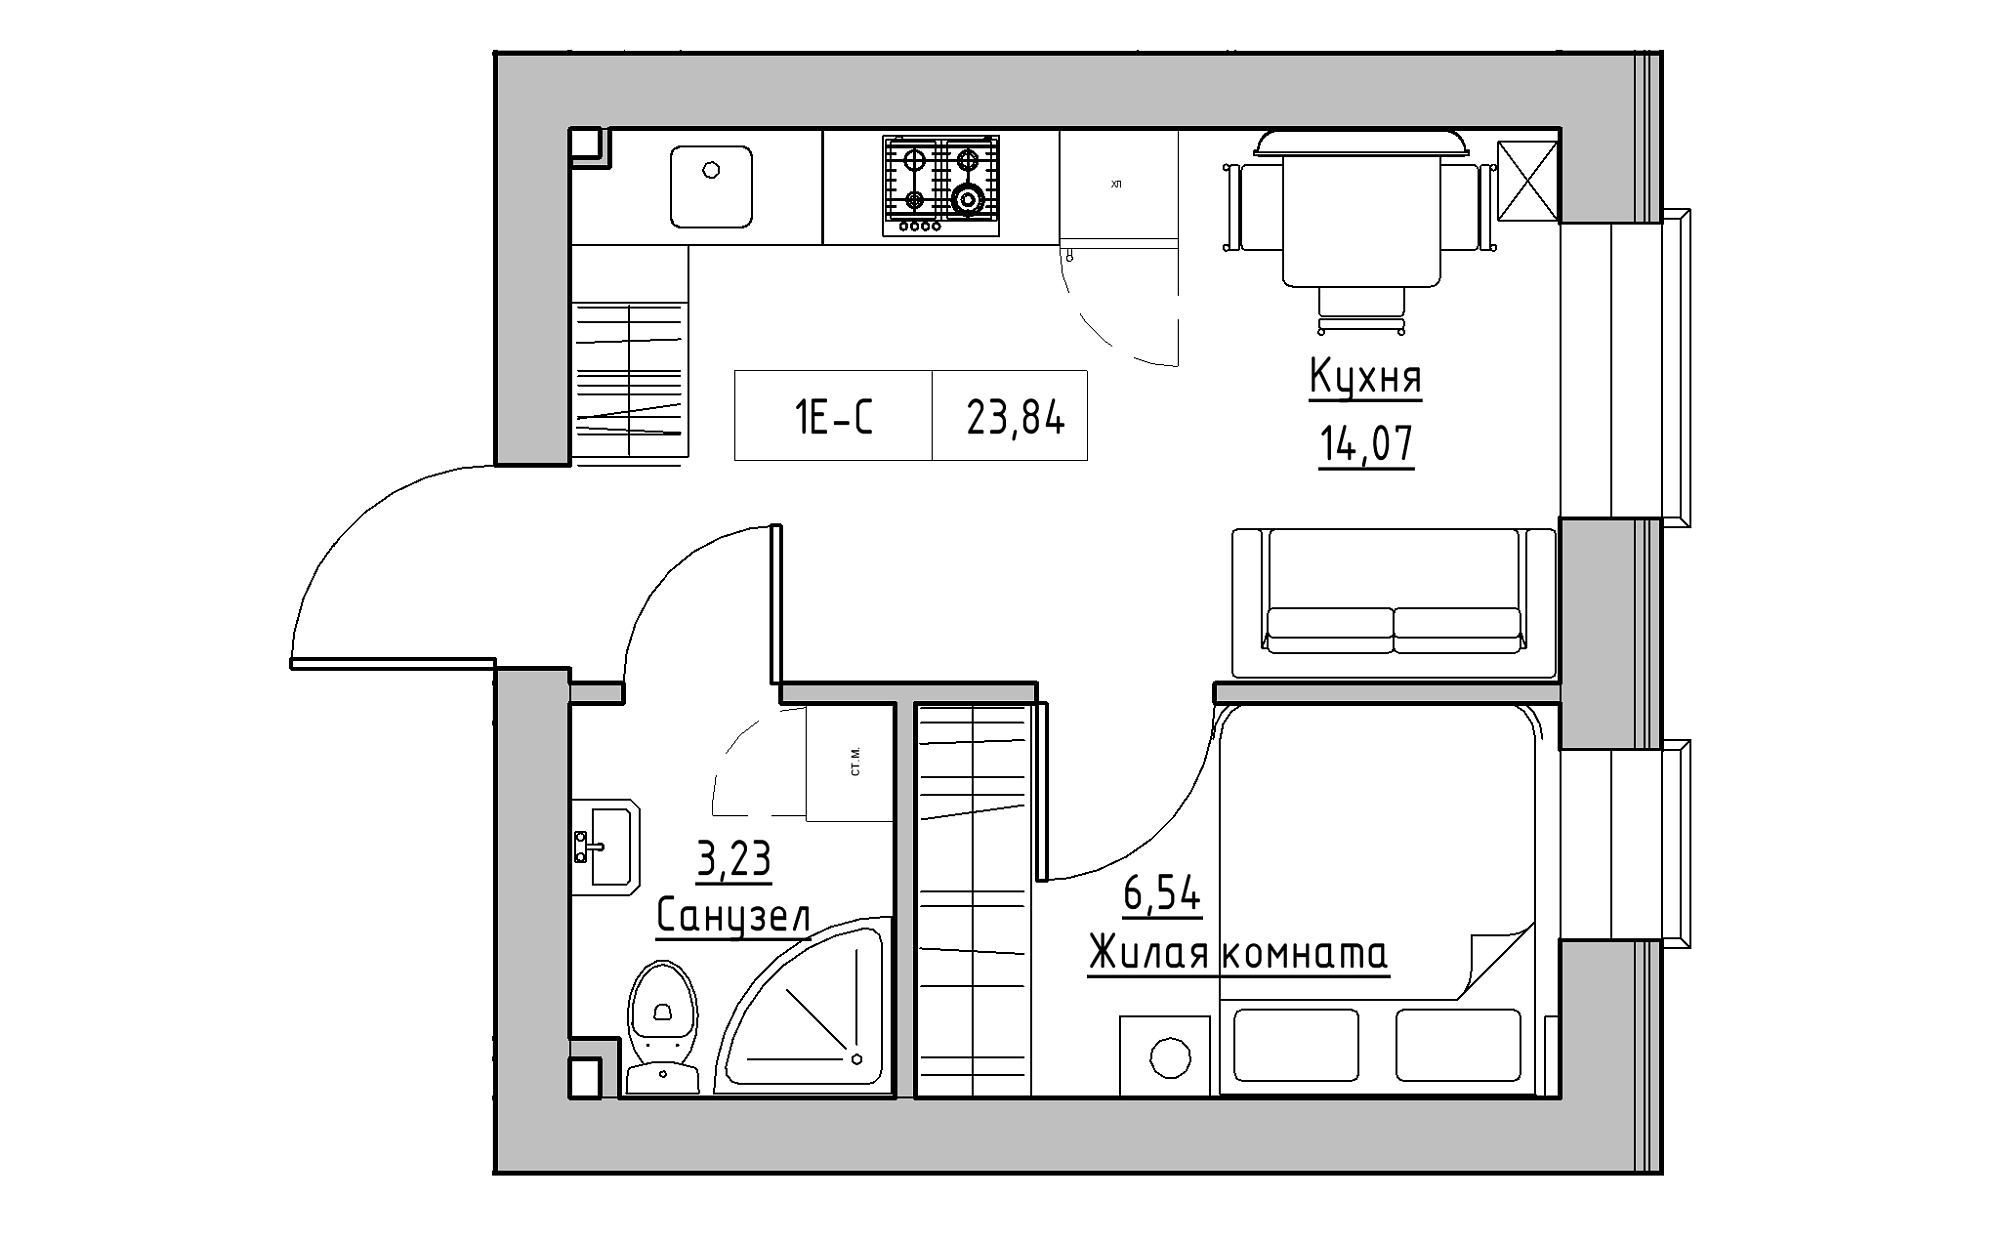 Планировка 1-к квартира площей 23.84м2, KS-022-01/0011.